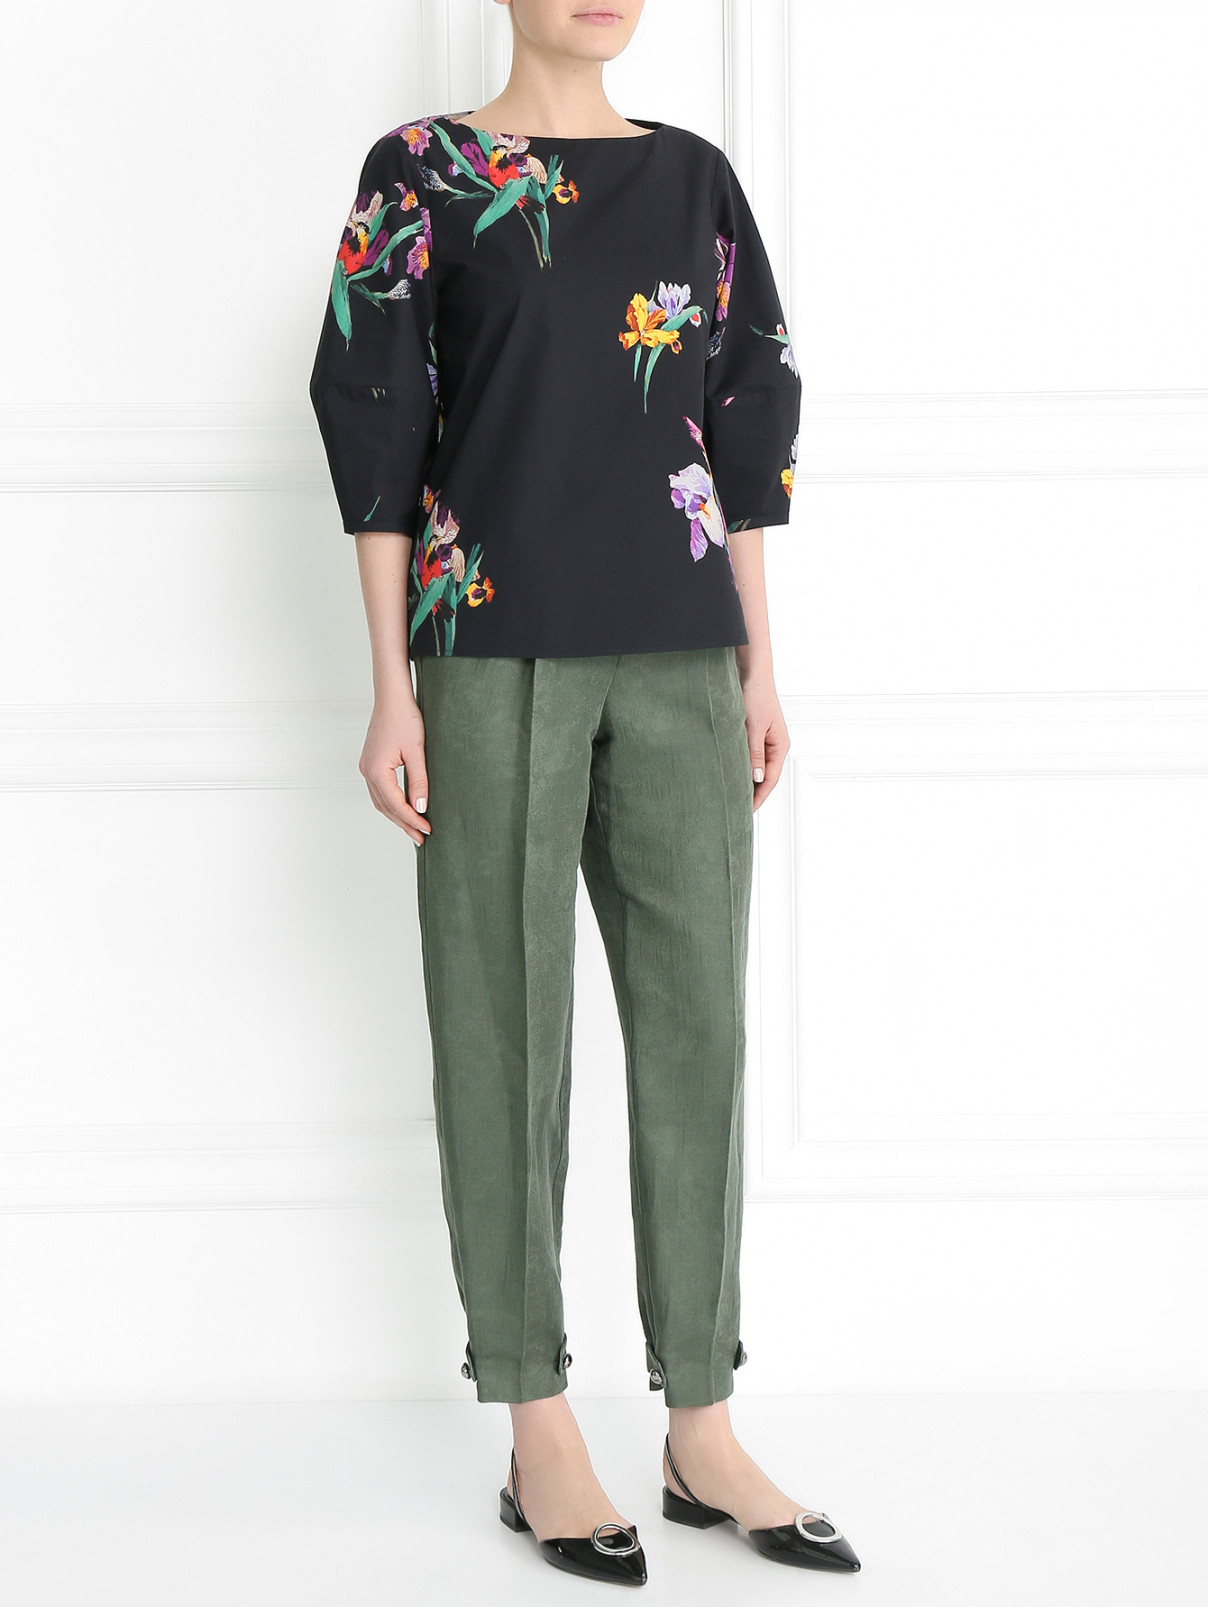 Завышенные брюки из льна и хлопка Emporio Armani  –  Модель Общий вид  – Цвет:  Зеленый